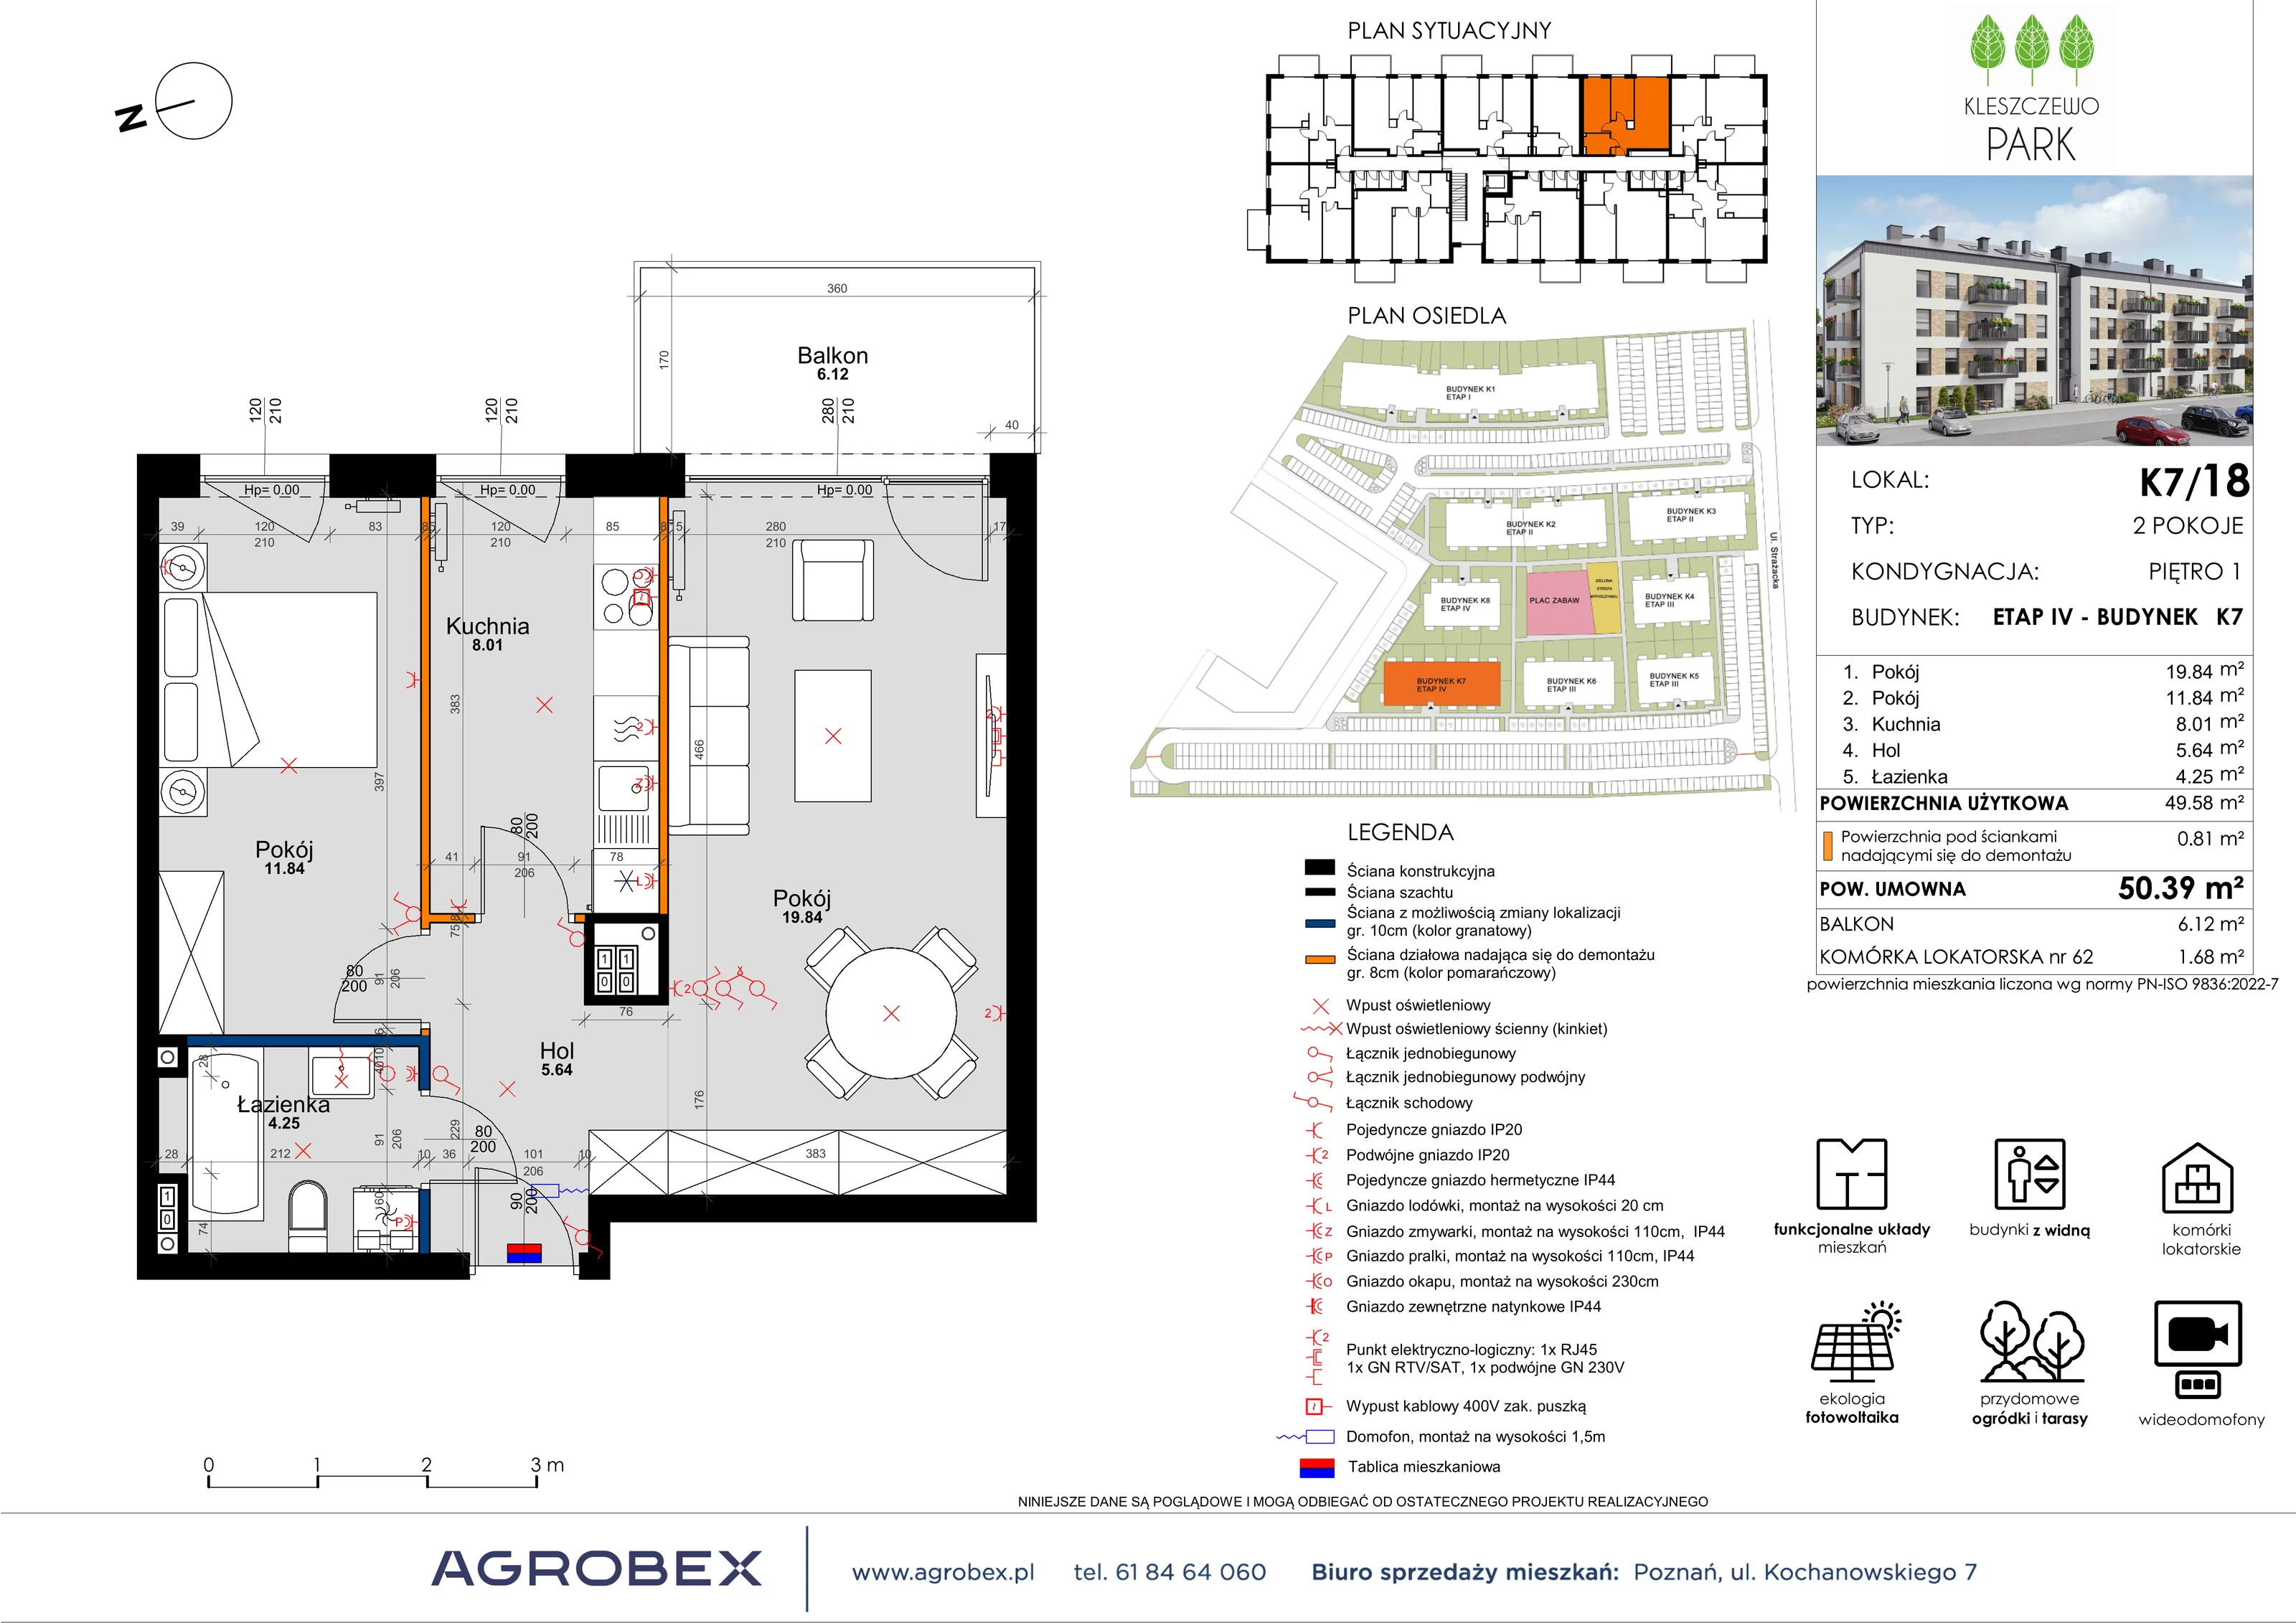 Mieszkanie 50,40 m², piętro 1, oferta nr K7/18, Kleszczewo Park, Kleszczewo, ul. Wiesławy Szymborskiej 1